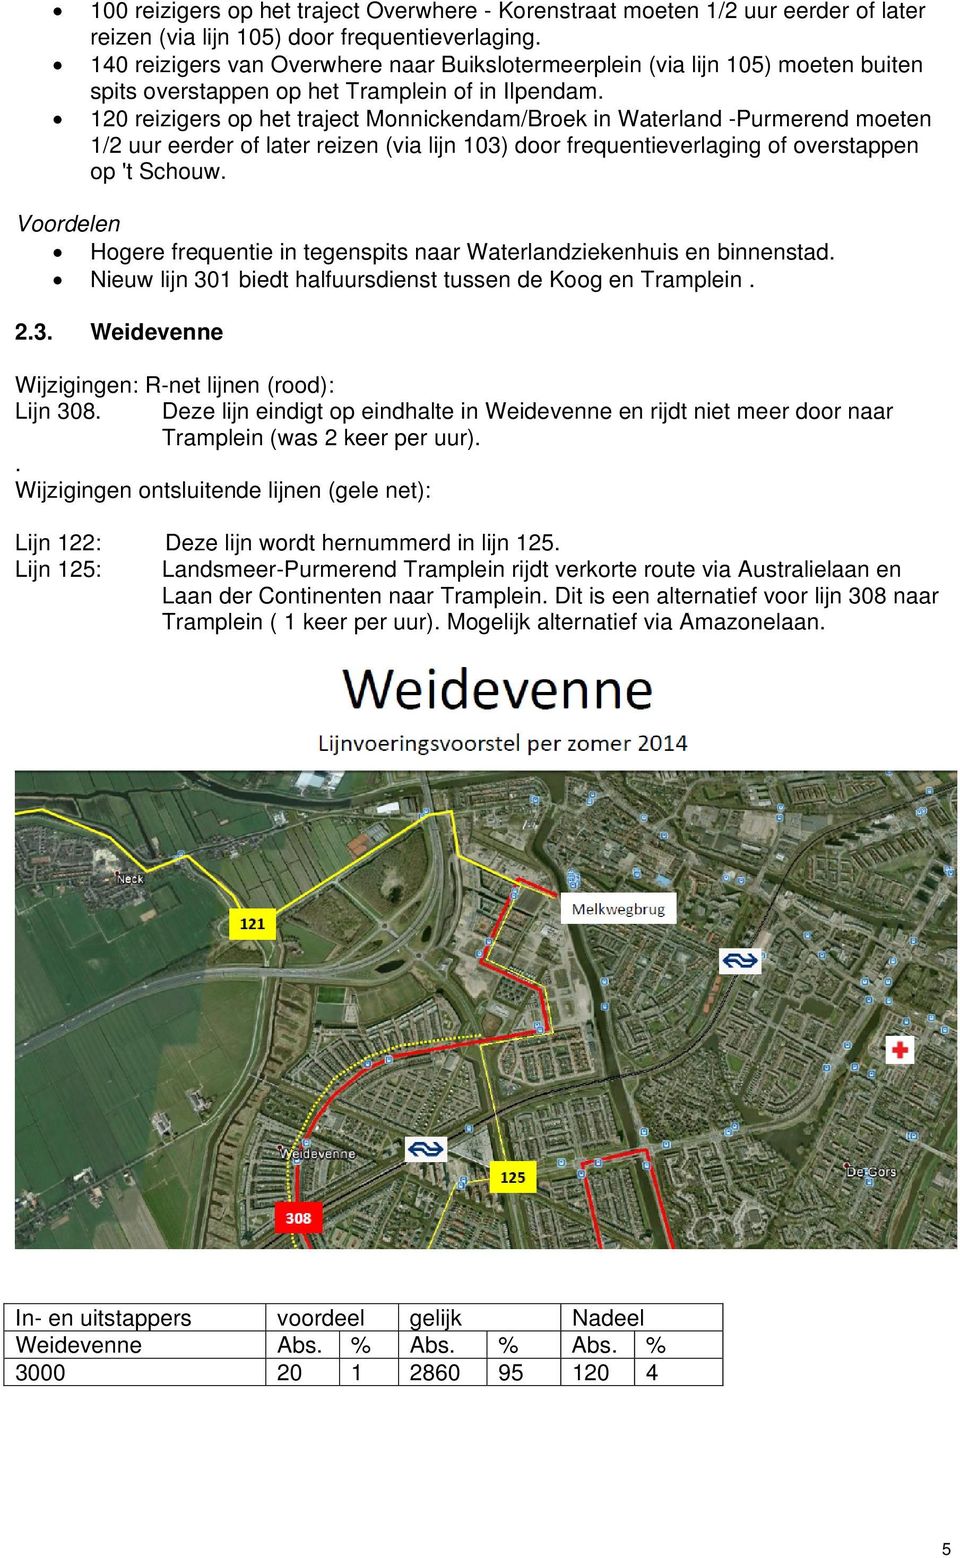 120 reizigers op het traject Monnickendam/Broek in Waterland -Purmerend moeten 1/2 uur eerder of later reizen (via lijn 103) door frequentieverlaging of overstappen op 't Schouw.